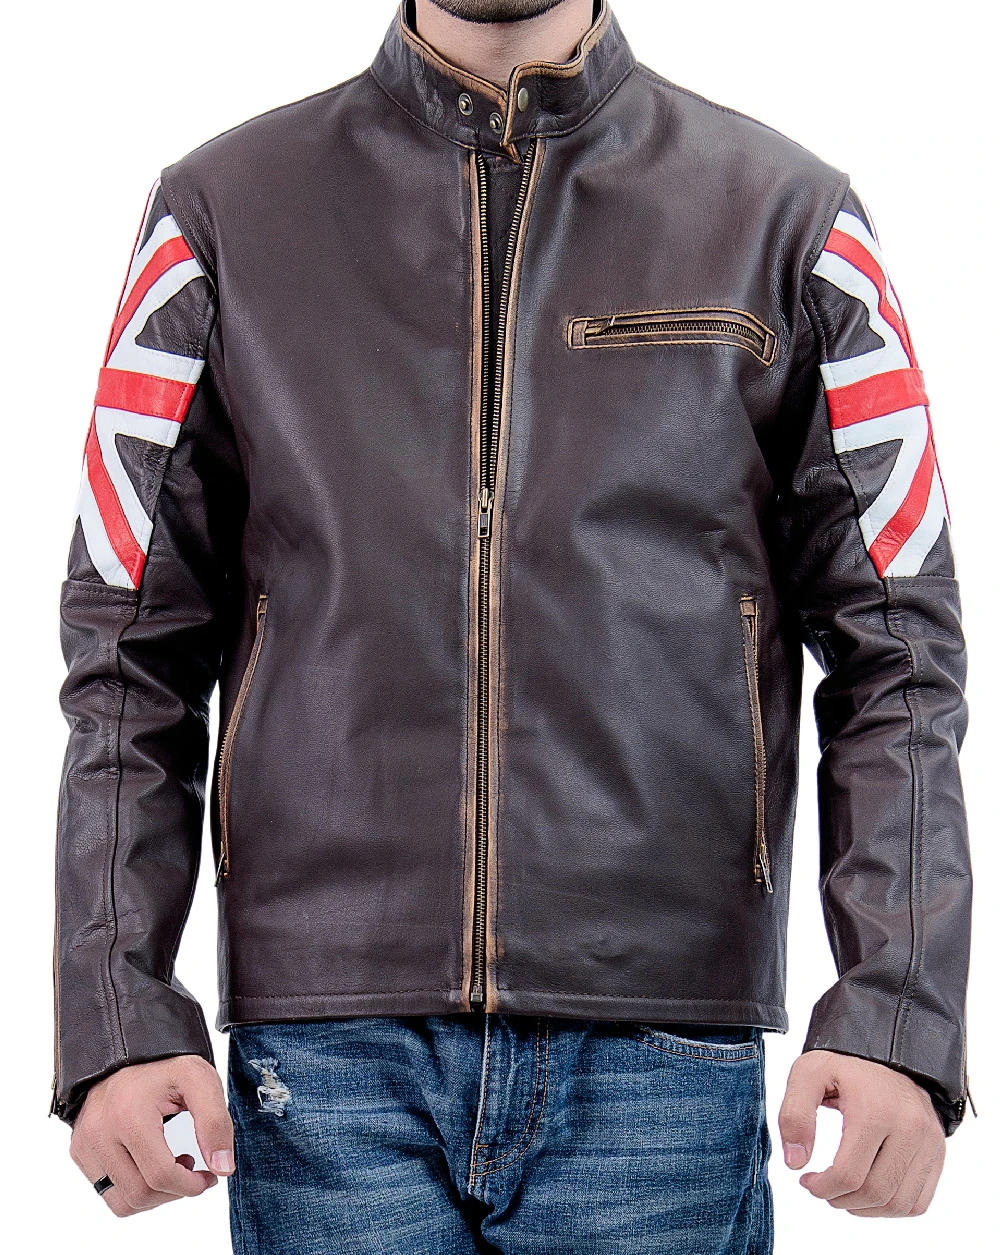 Union Men Biker Vintage Union Jack Brown Leather Jacket